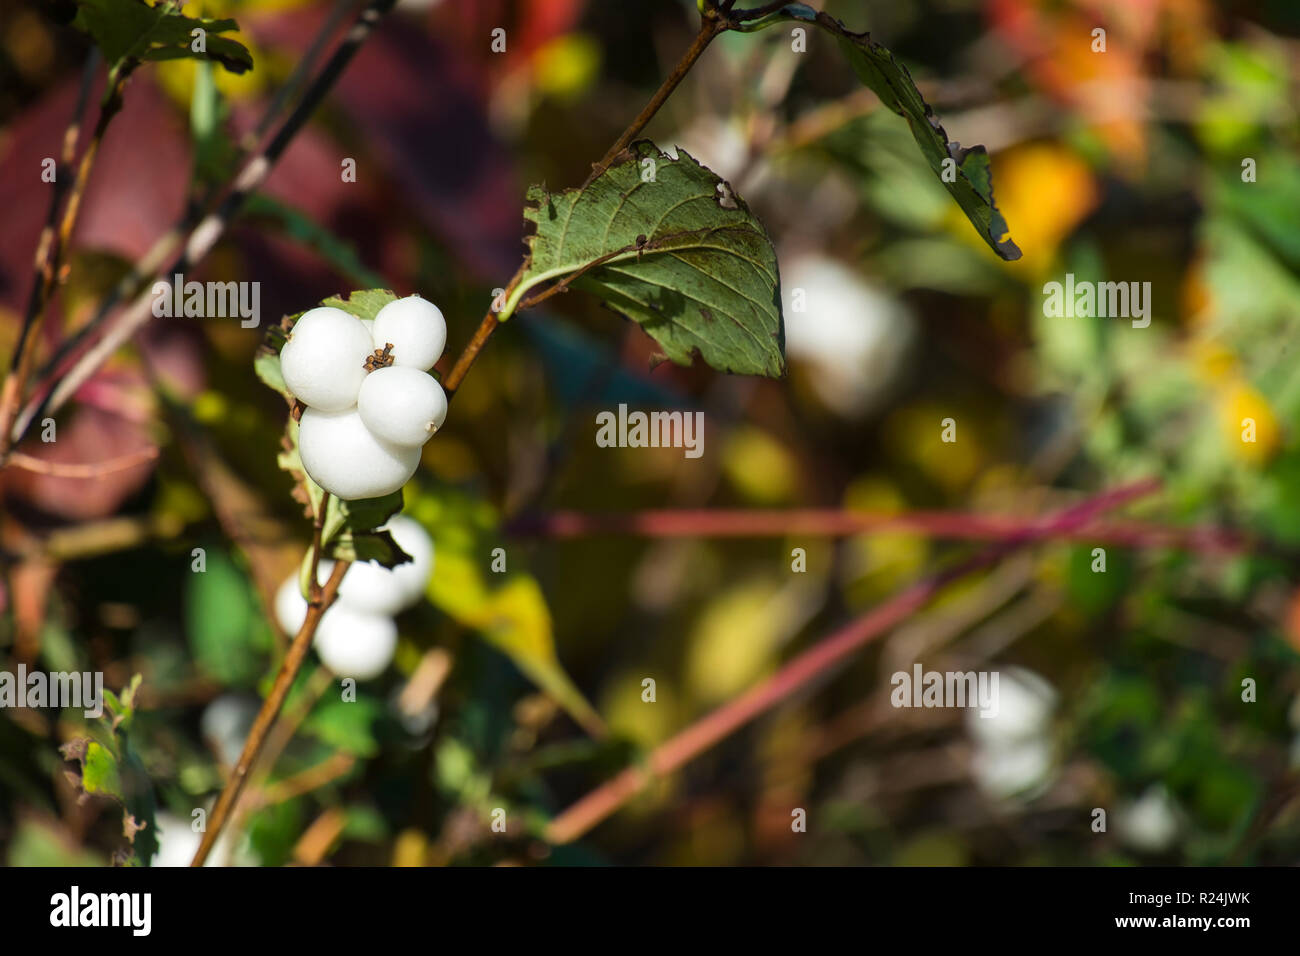 Niveous berries of common snowberry (Symphoricarpos albus) Stock Photo